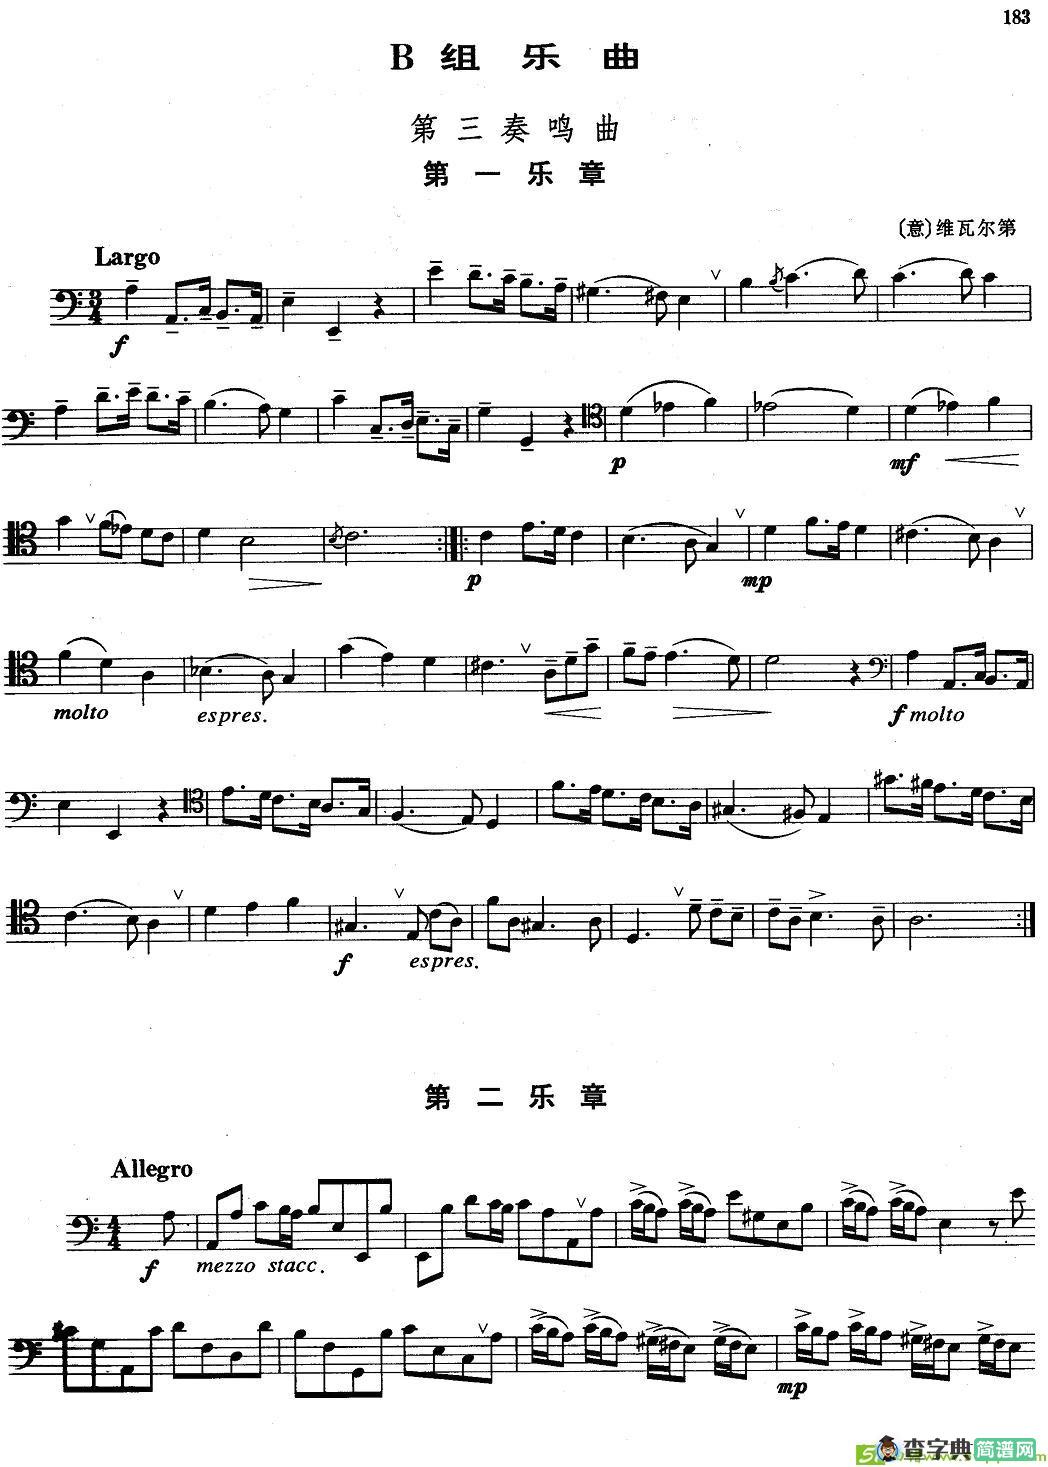 B组乐曲：第三奏鸣曲铜管谱([意]维瓦尔第作曲)